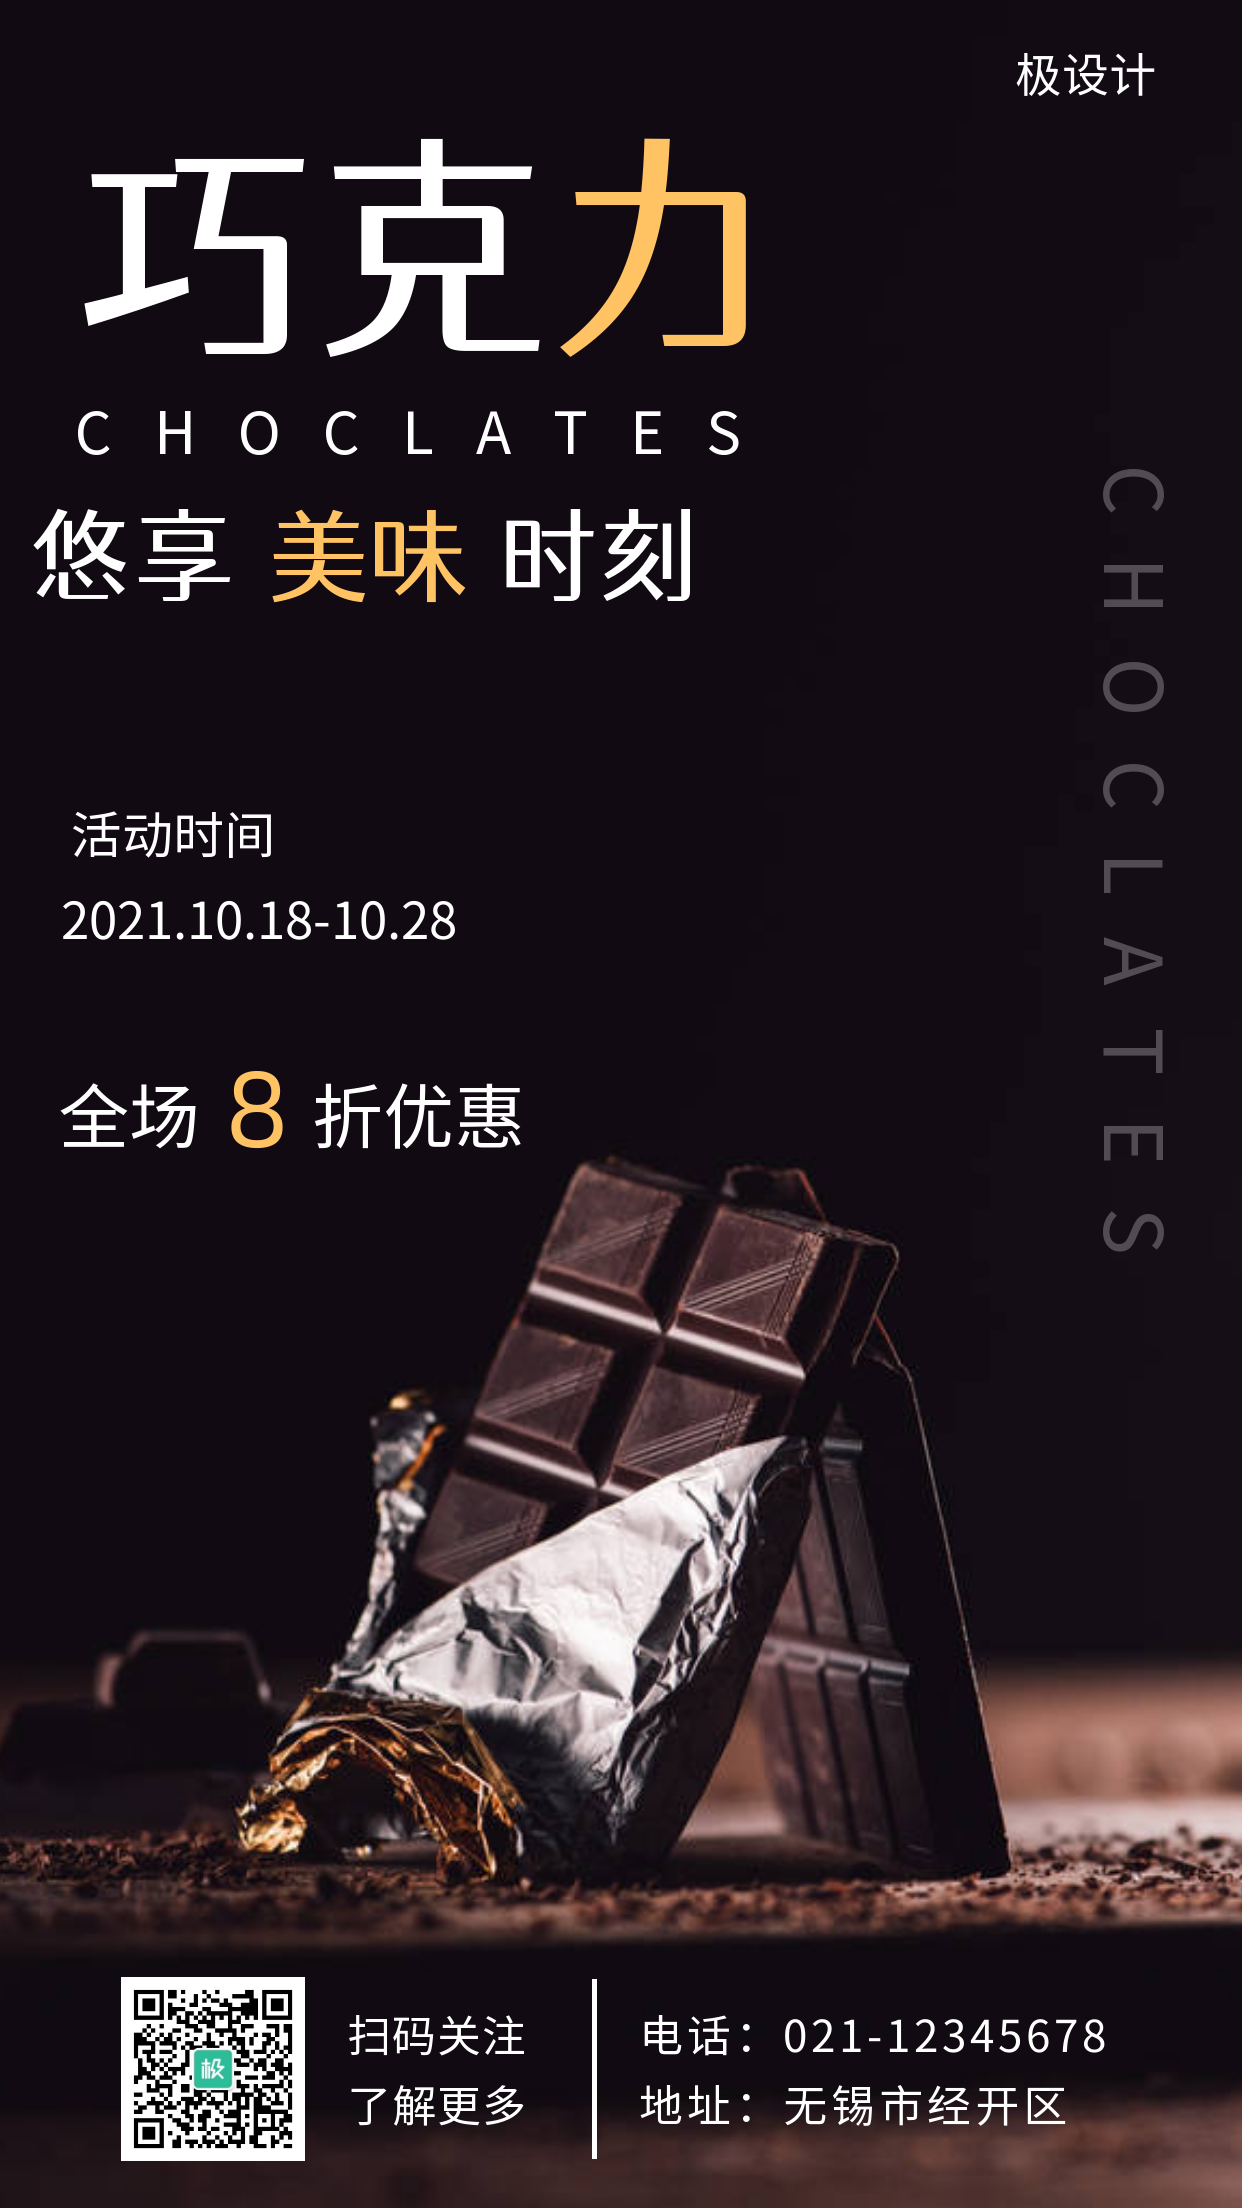 巧克力促销褐色配图简约大气宣传营销海报